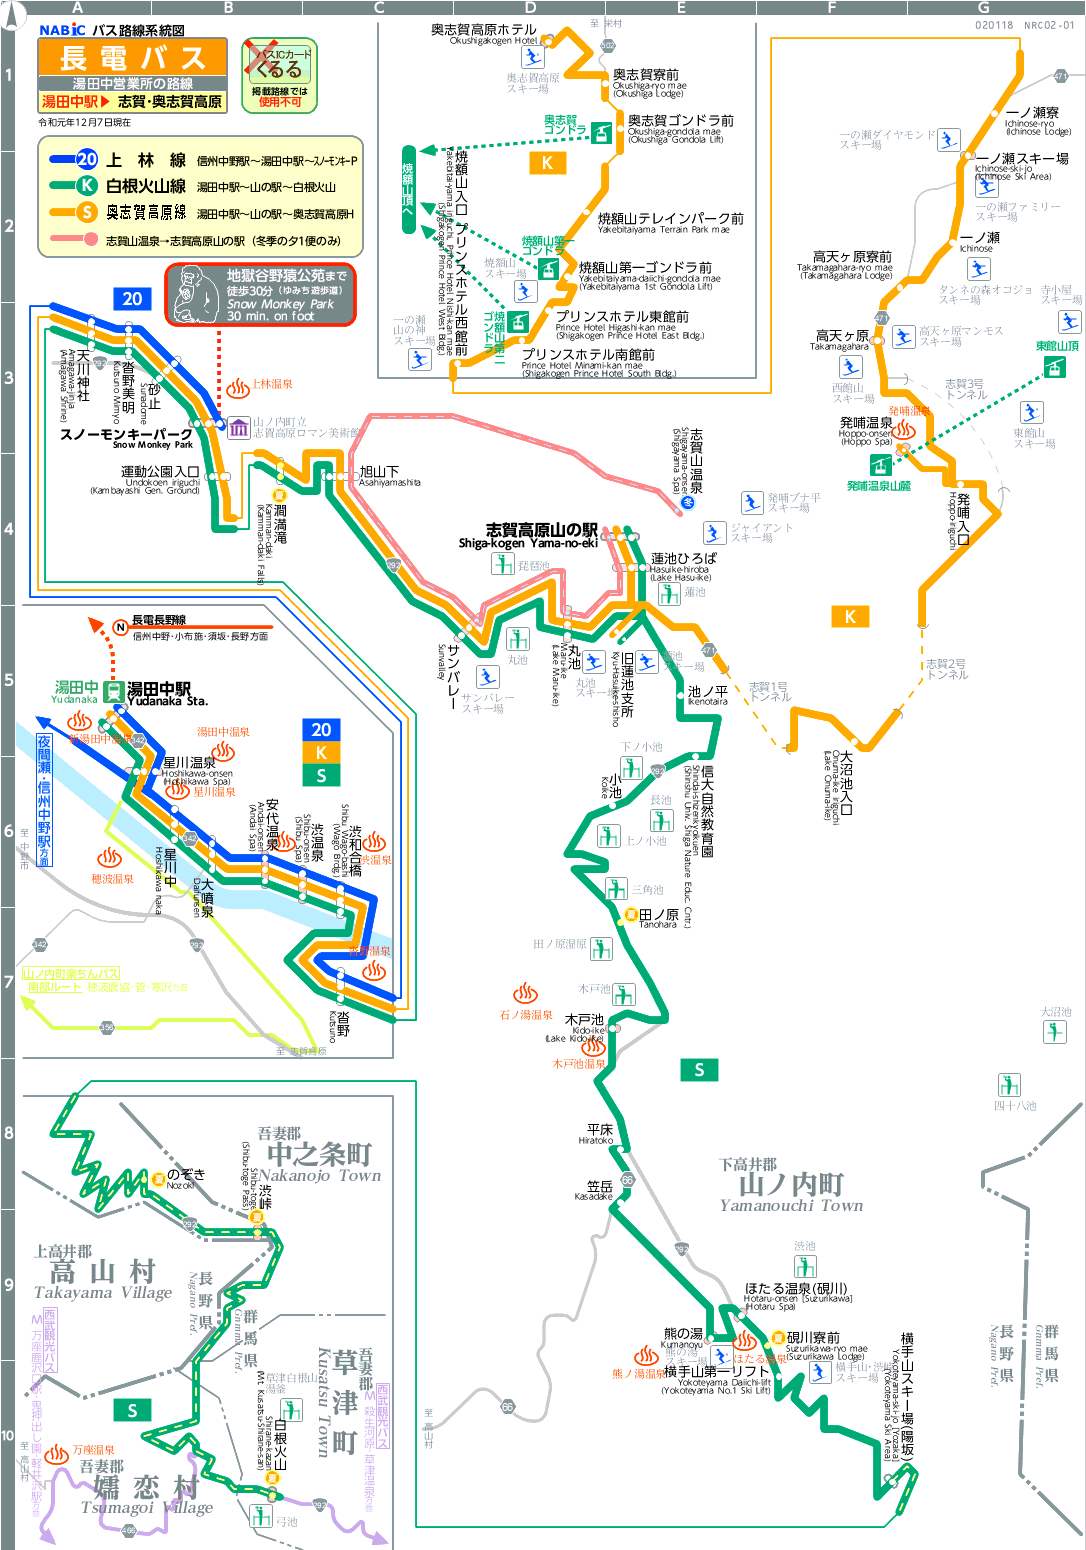 路線図[NRC02-01]